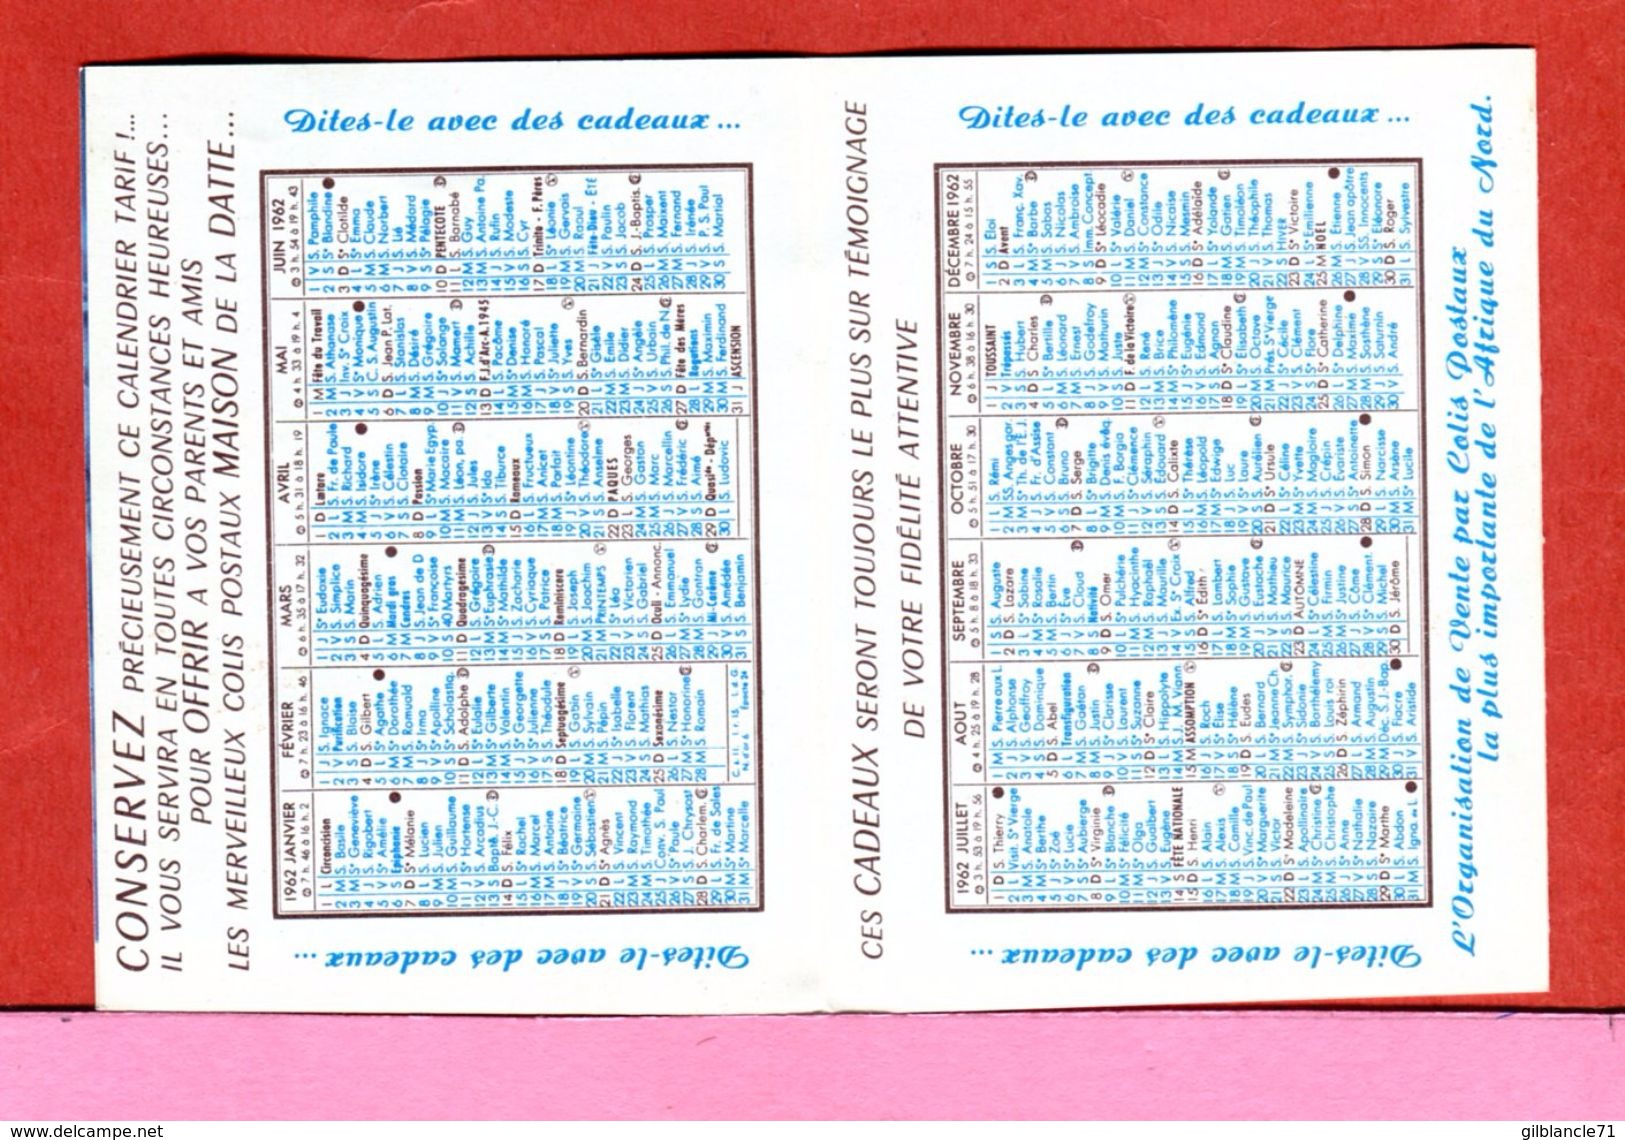 ALGERIE AFN Dépliant Publicité Calendrier 1961 De La Maison De La Datte Rue Charras Alger Destiné Surtout Aux Militaires - Advertising